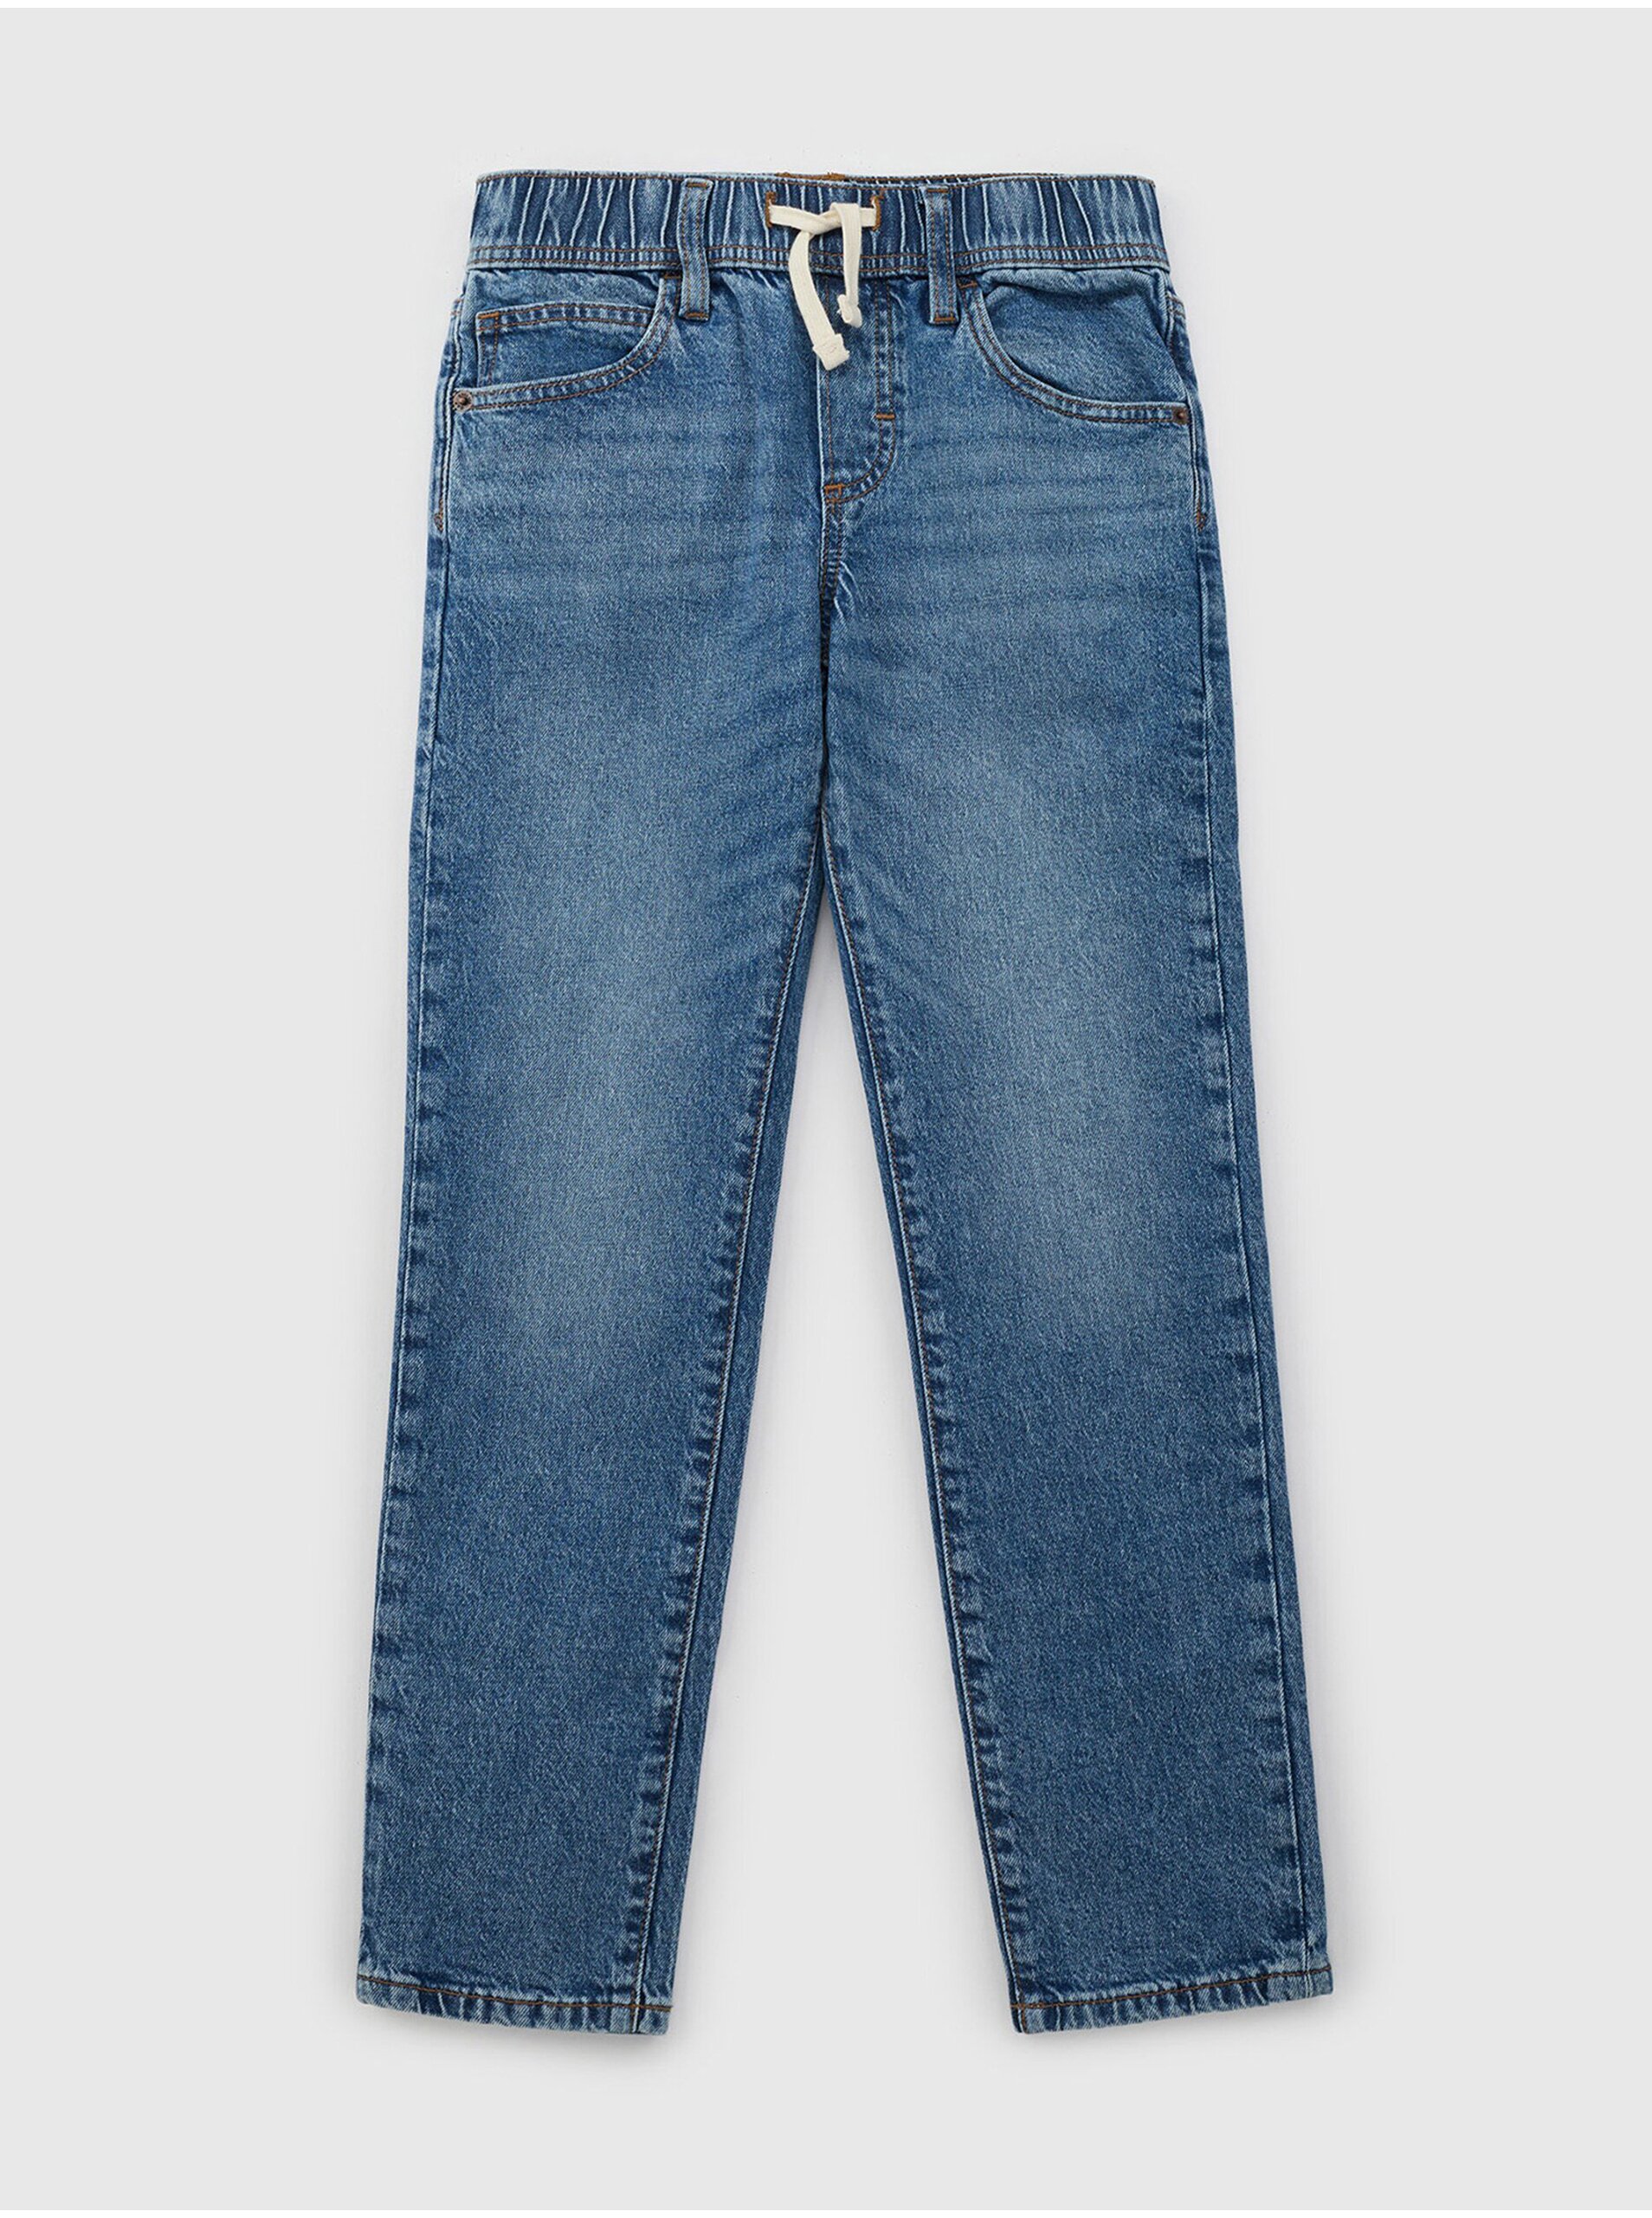 Lacno Modré chlapčenské džínsy GAP